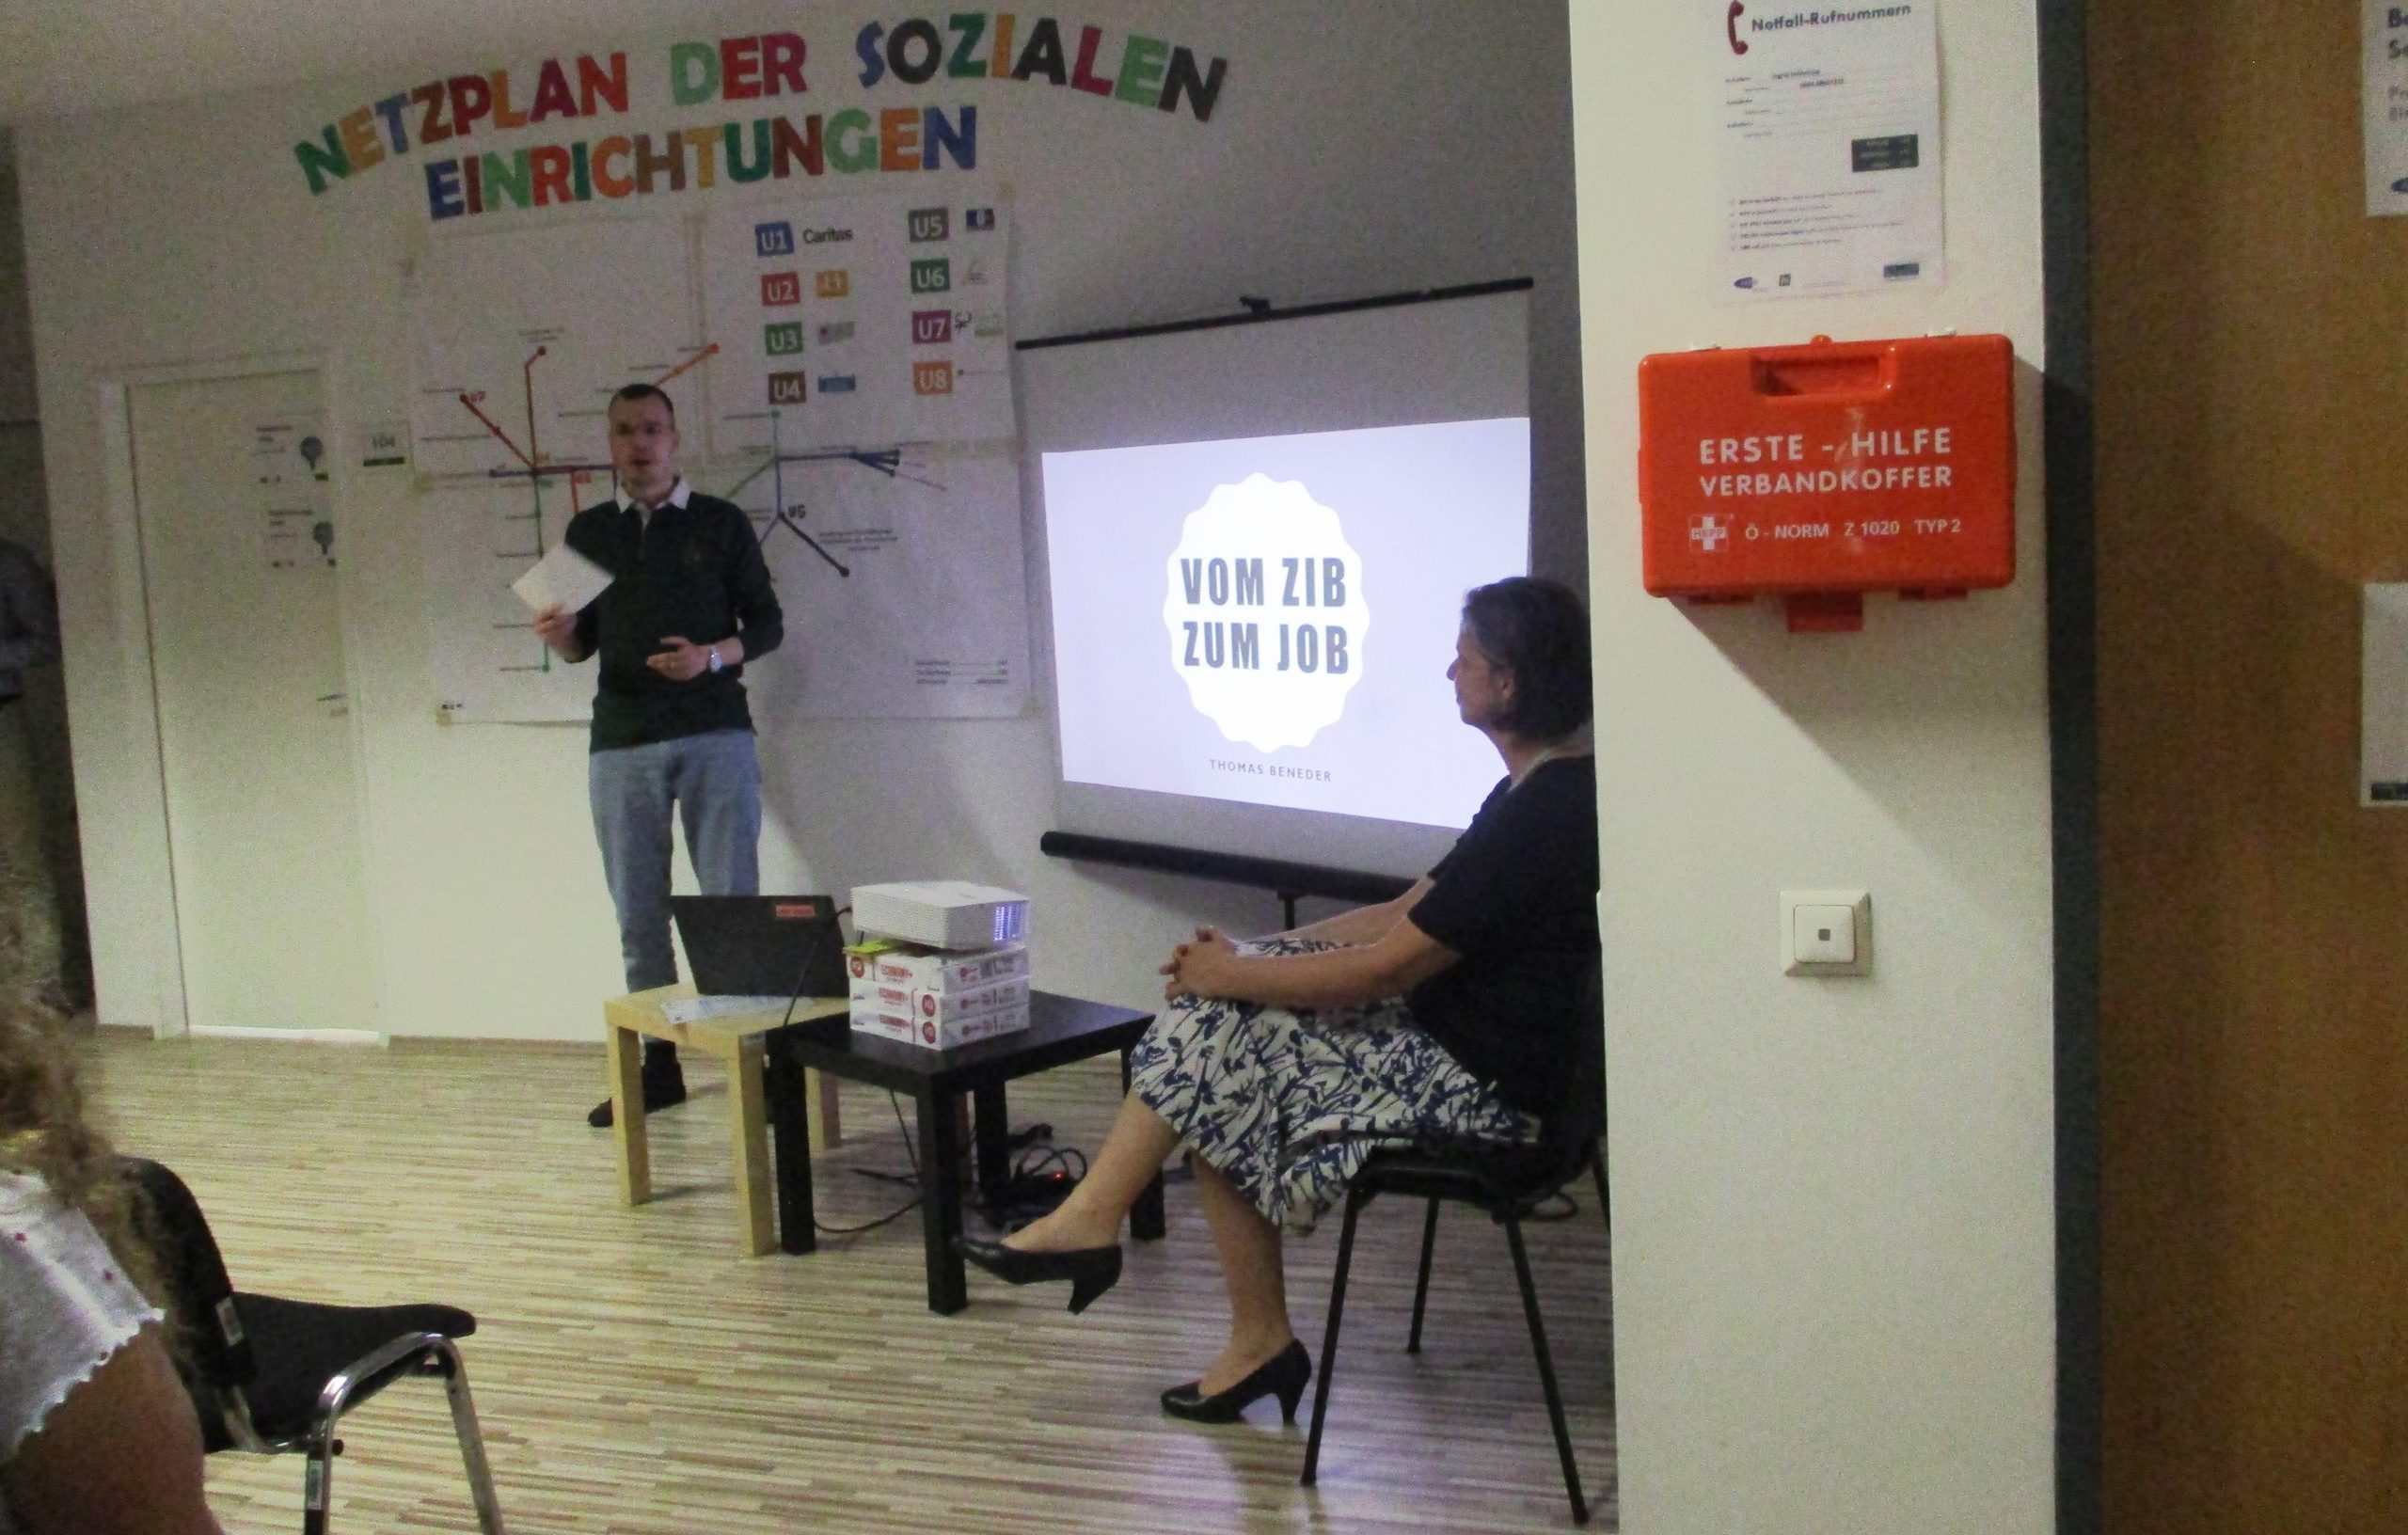 Ehemaliger JBZ Teilnehmer bei seiner Keynote "Vom ZIB zum Job" beim Open House des Jugendbildungszentrums Krems mit dem Thema "Medienkompetenz in einer digitalen Arbeitswelt"